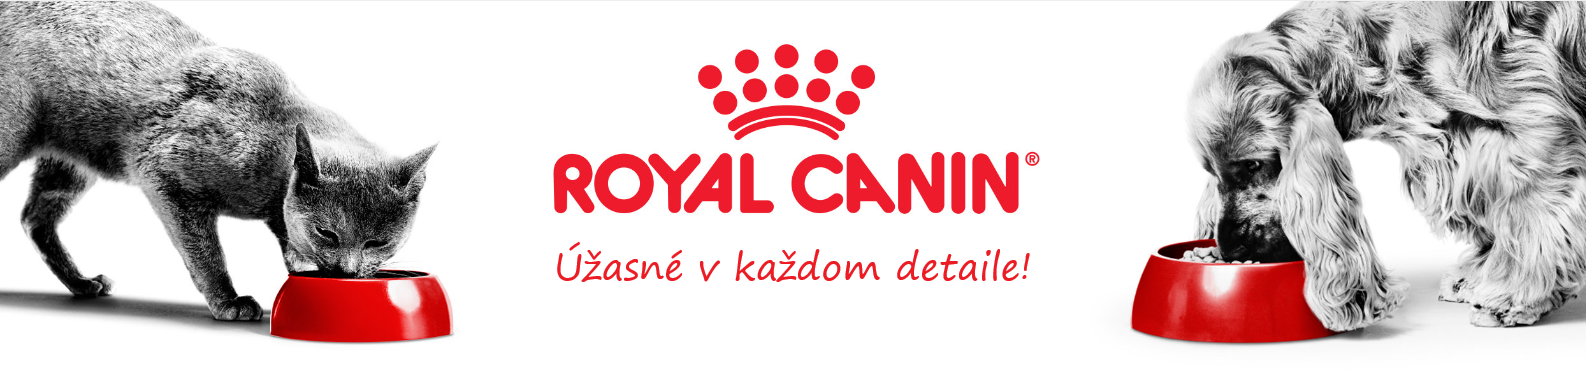 Royal Canin banner najlekaren